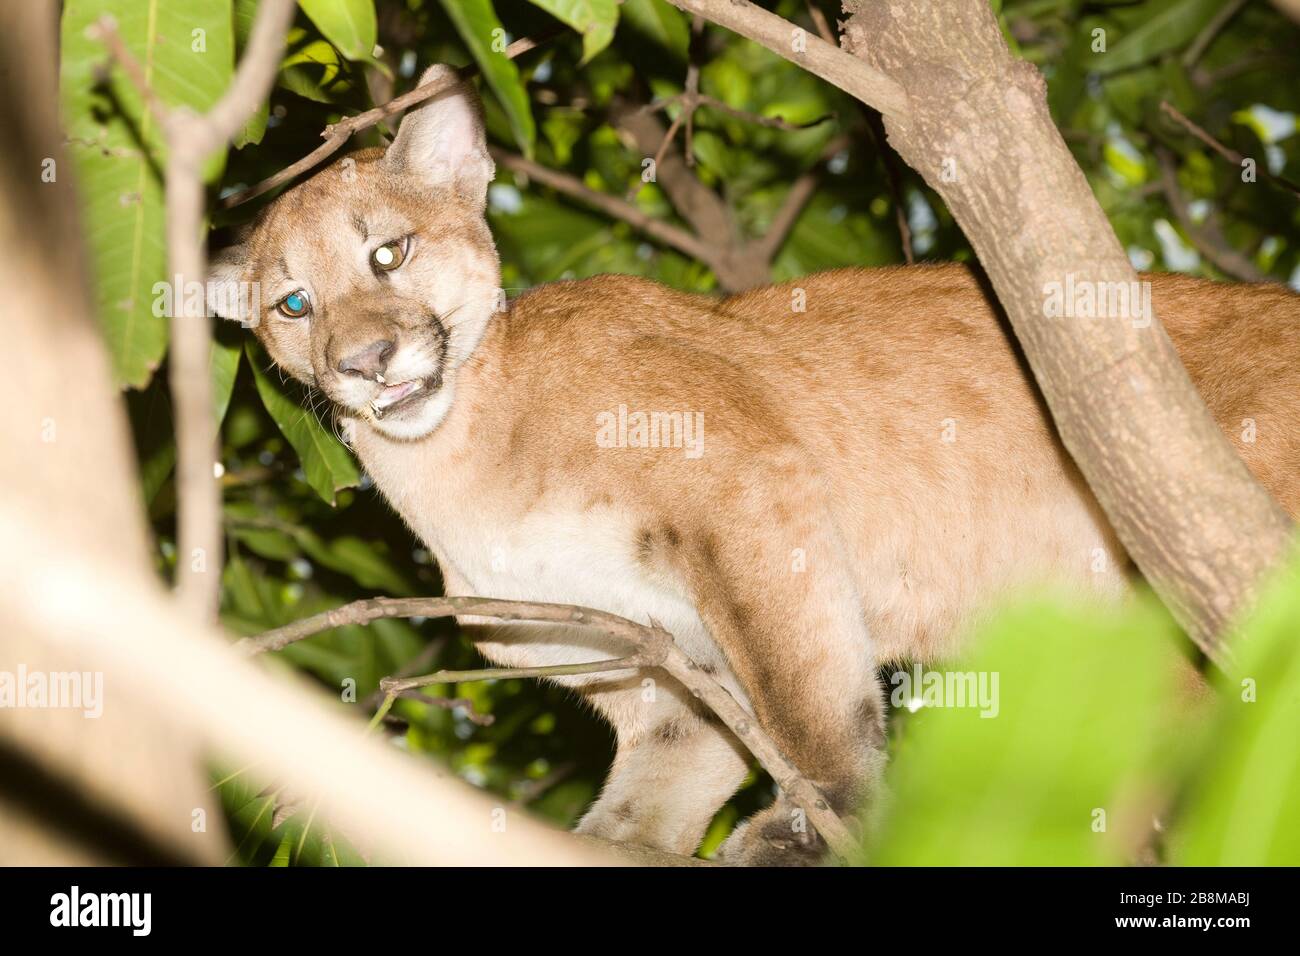 Onça-parda, Puma (Puma concolor) Burrowed, Aquidauana, Mato Grosso do Sul,  Brazil Stock Photo - Alamy